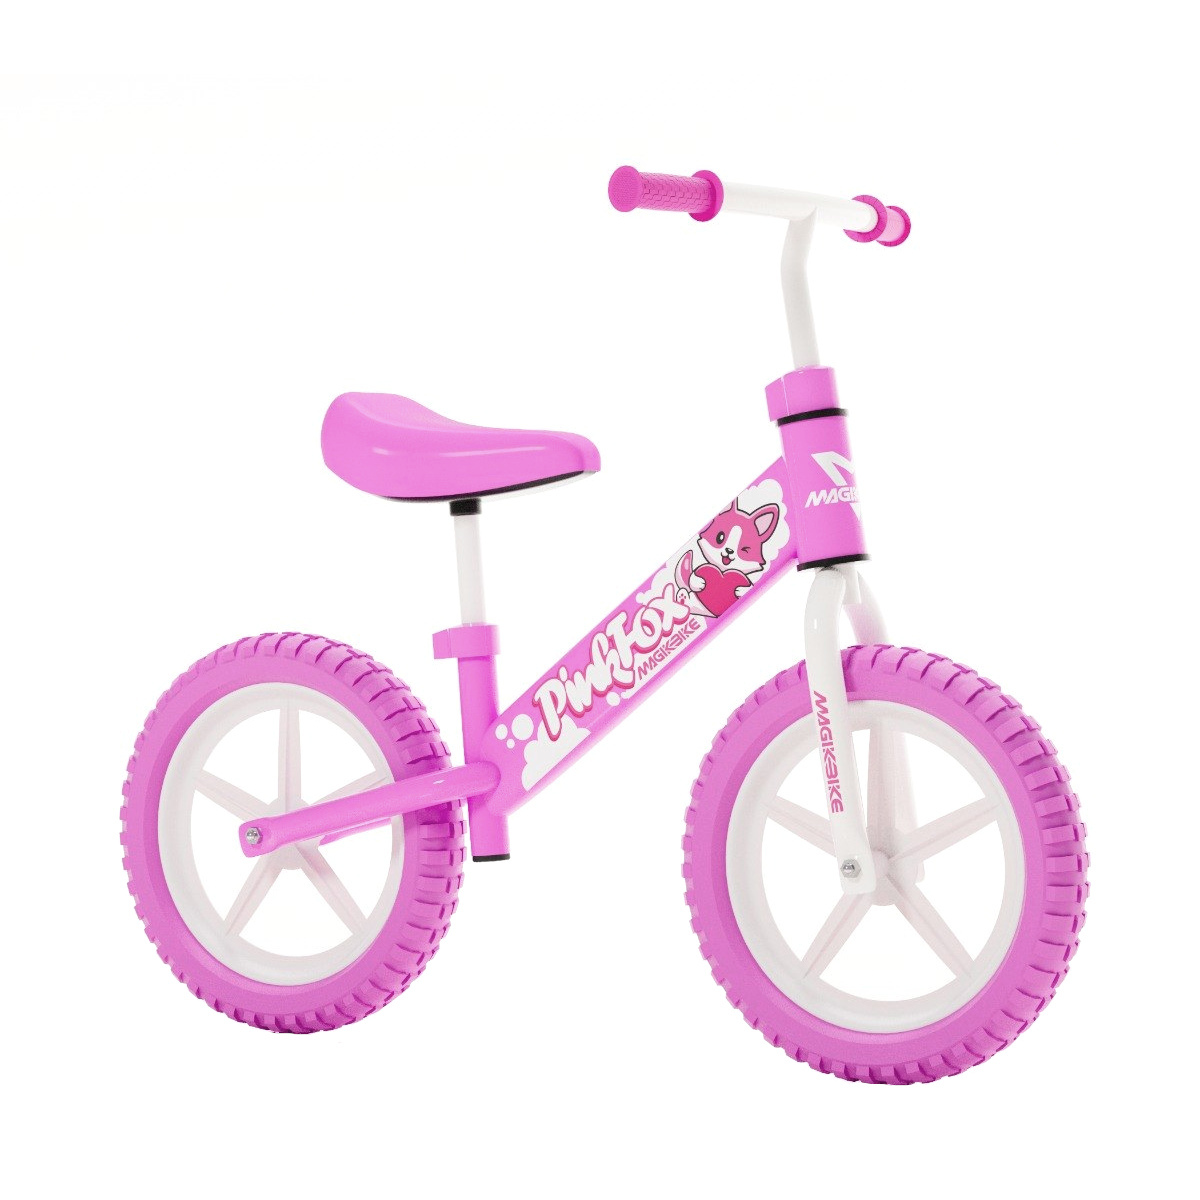 Bicicleta Equilibrio 12 Pulgadas Pink Fox 2-5 Años - rosa - 